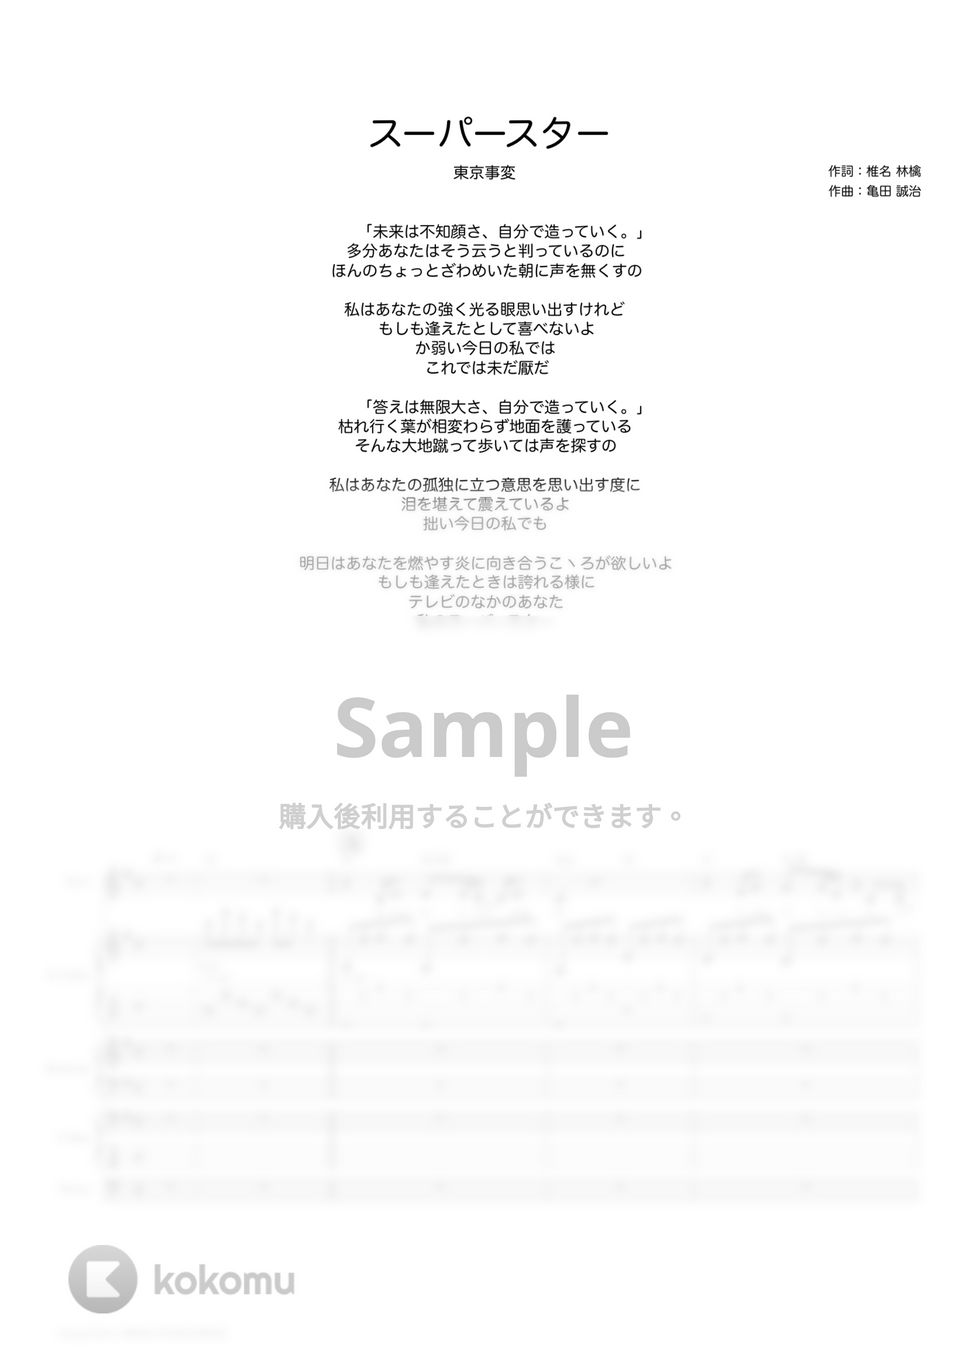 東京事変 - スーパースター (バンドスコア) by TRIAD GUITAR SCHOOL